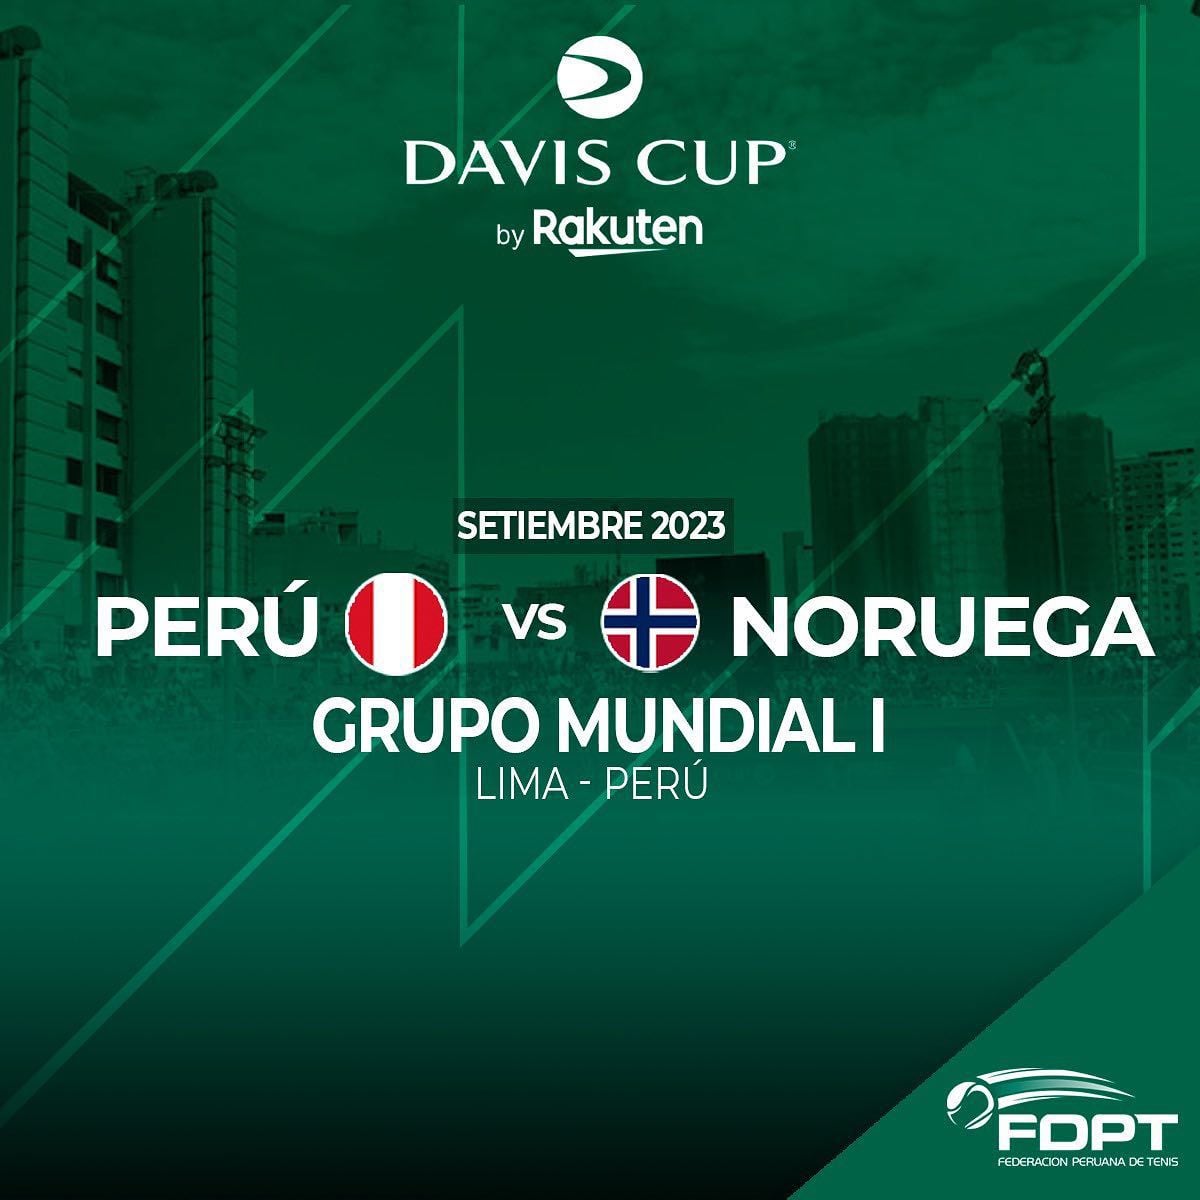 Perú vs Noruega en Copa Davis 2023: conoce al rival y fecha de la serie por  el Grupo Mundial 1 - Infobae